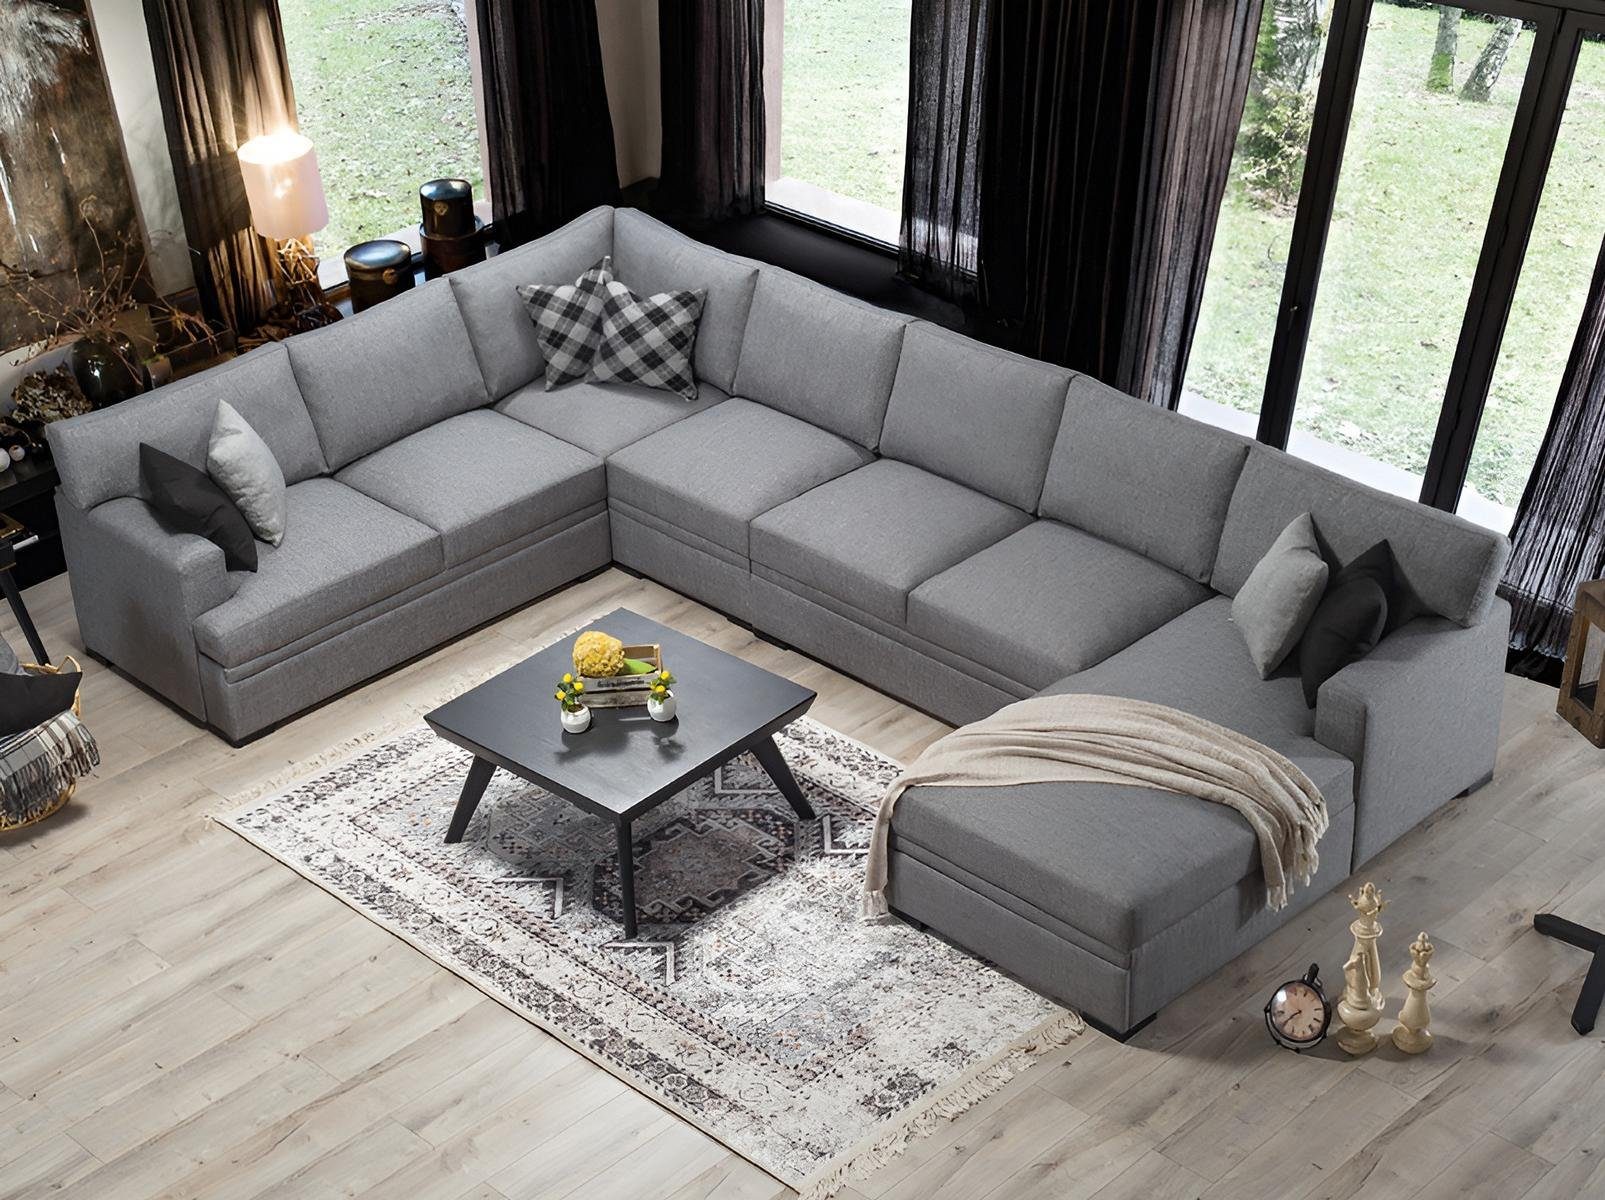 Möbel Teile, JVmoebel Neu, 1 Made Design Ecksofa Wohnzimmer Einrichtung Beige U-Form Europa Grau in Modern Sofa